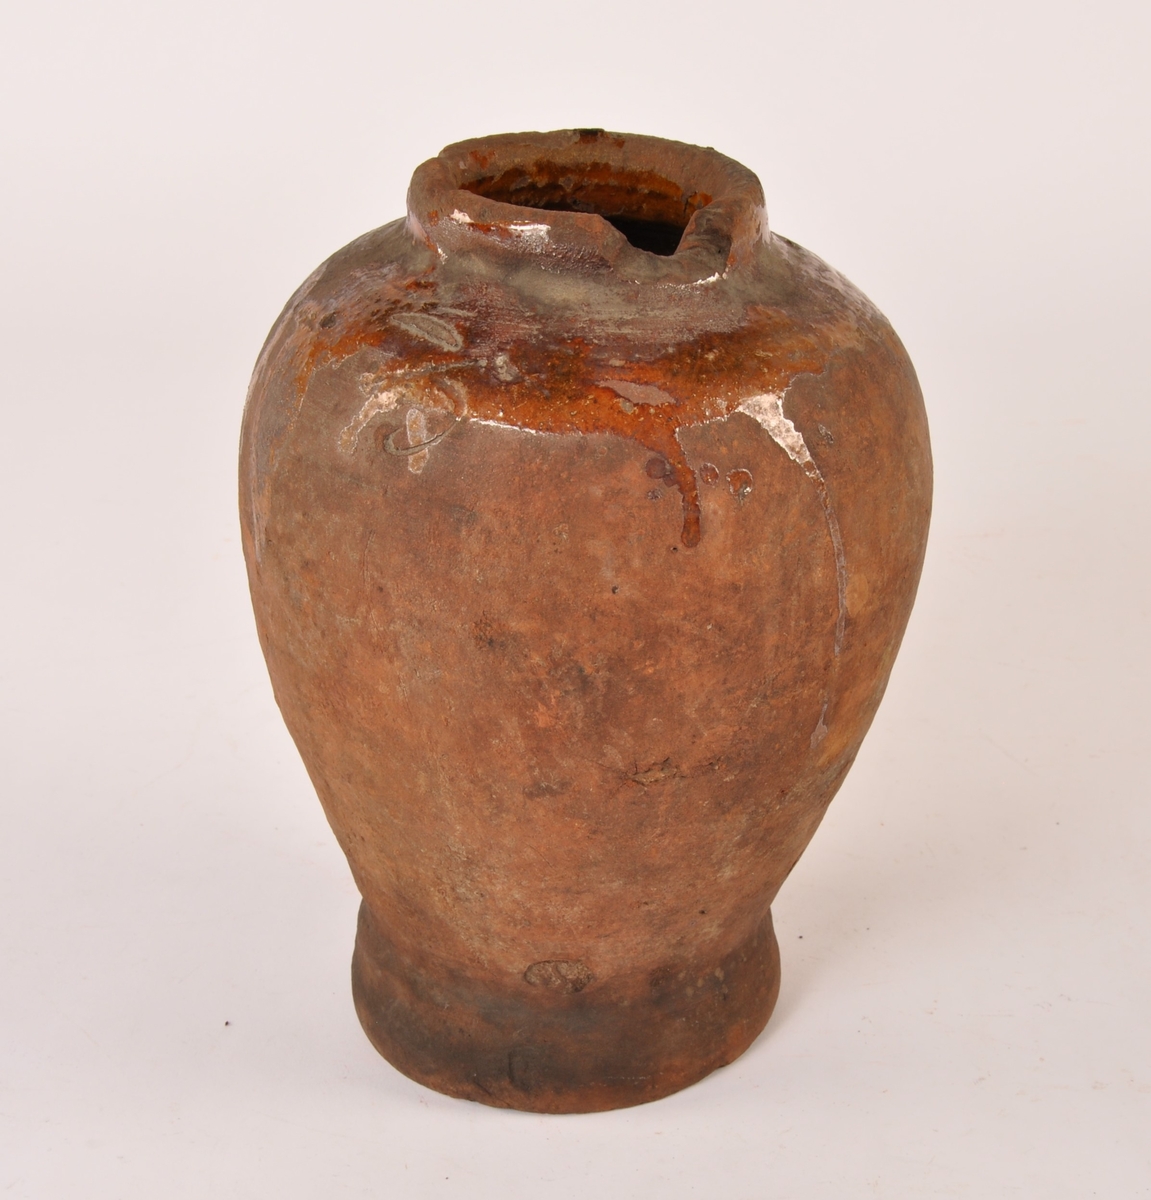 Dreid krukke i keramikk med fotrand og munningsrand. Sylinderformet med bredere form opp mot munningen. Glasurrester på utsiden. Glasert innside.